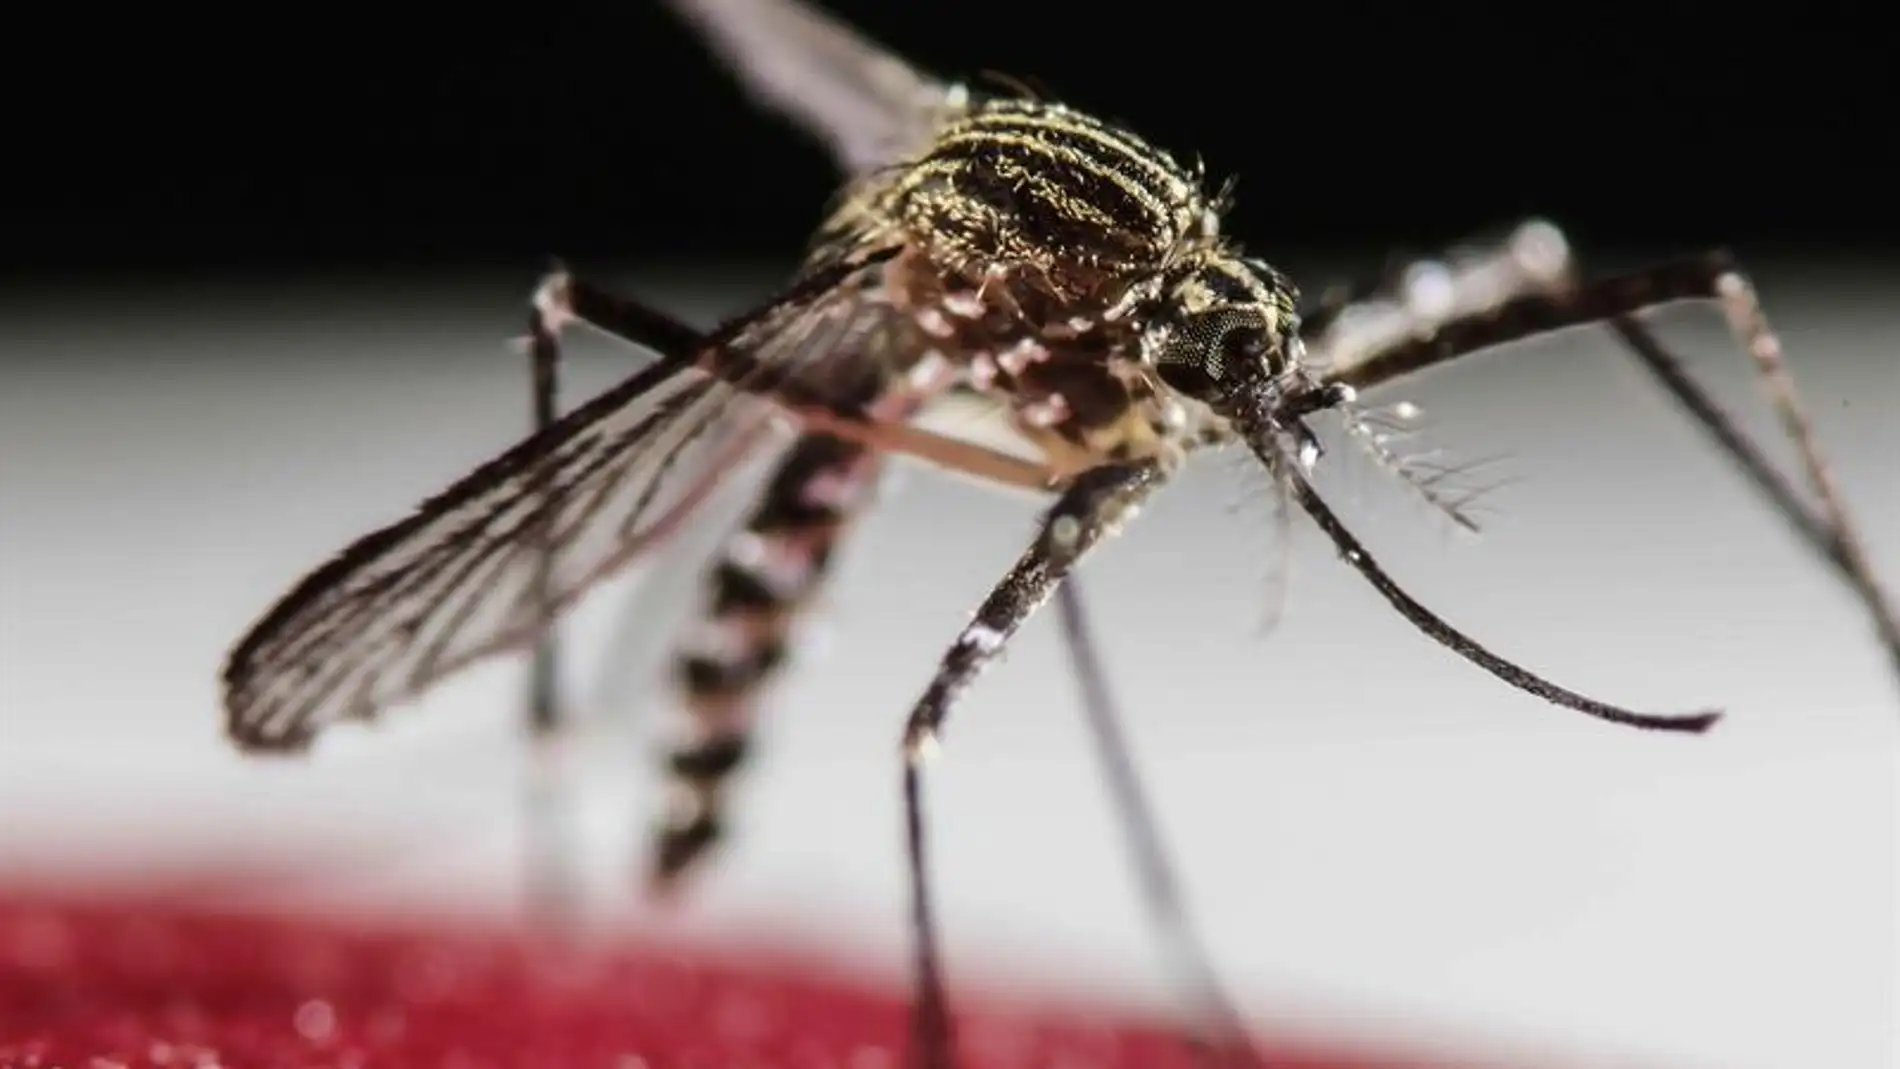 Mosquito Aedes Aegypti, transmisor del virus Zika